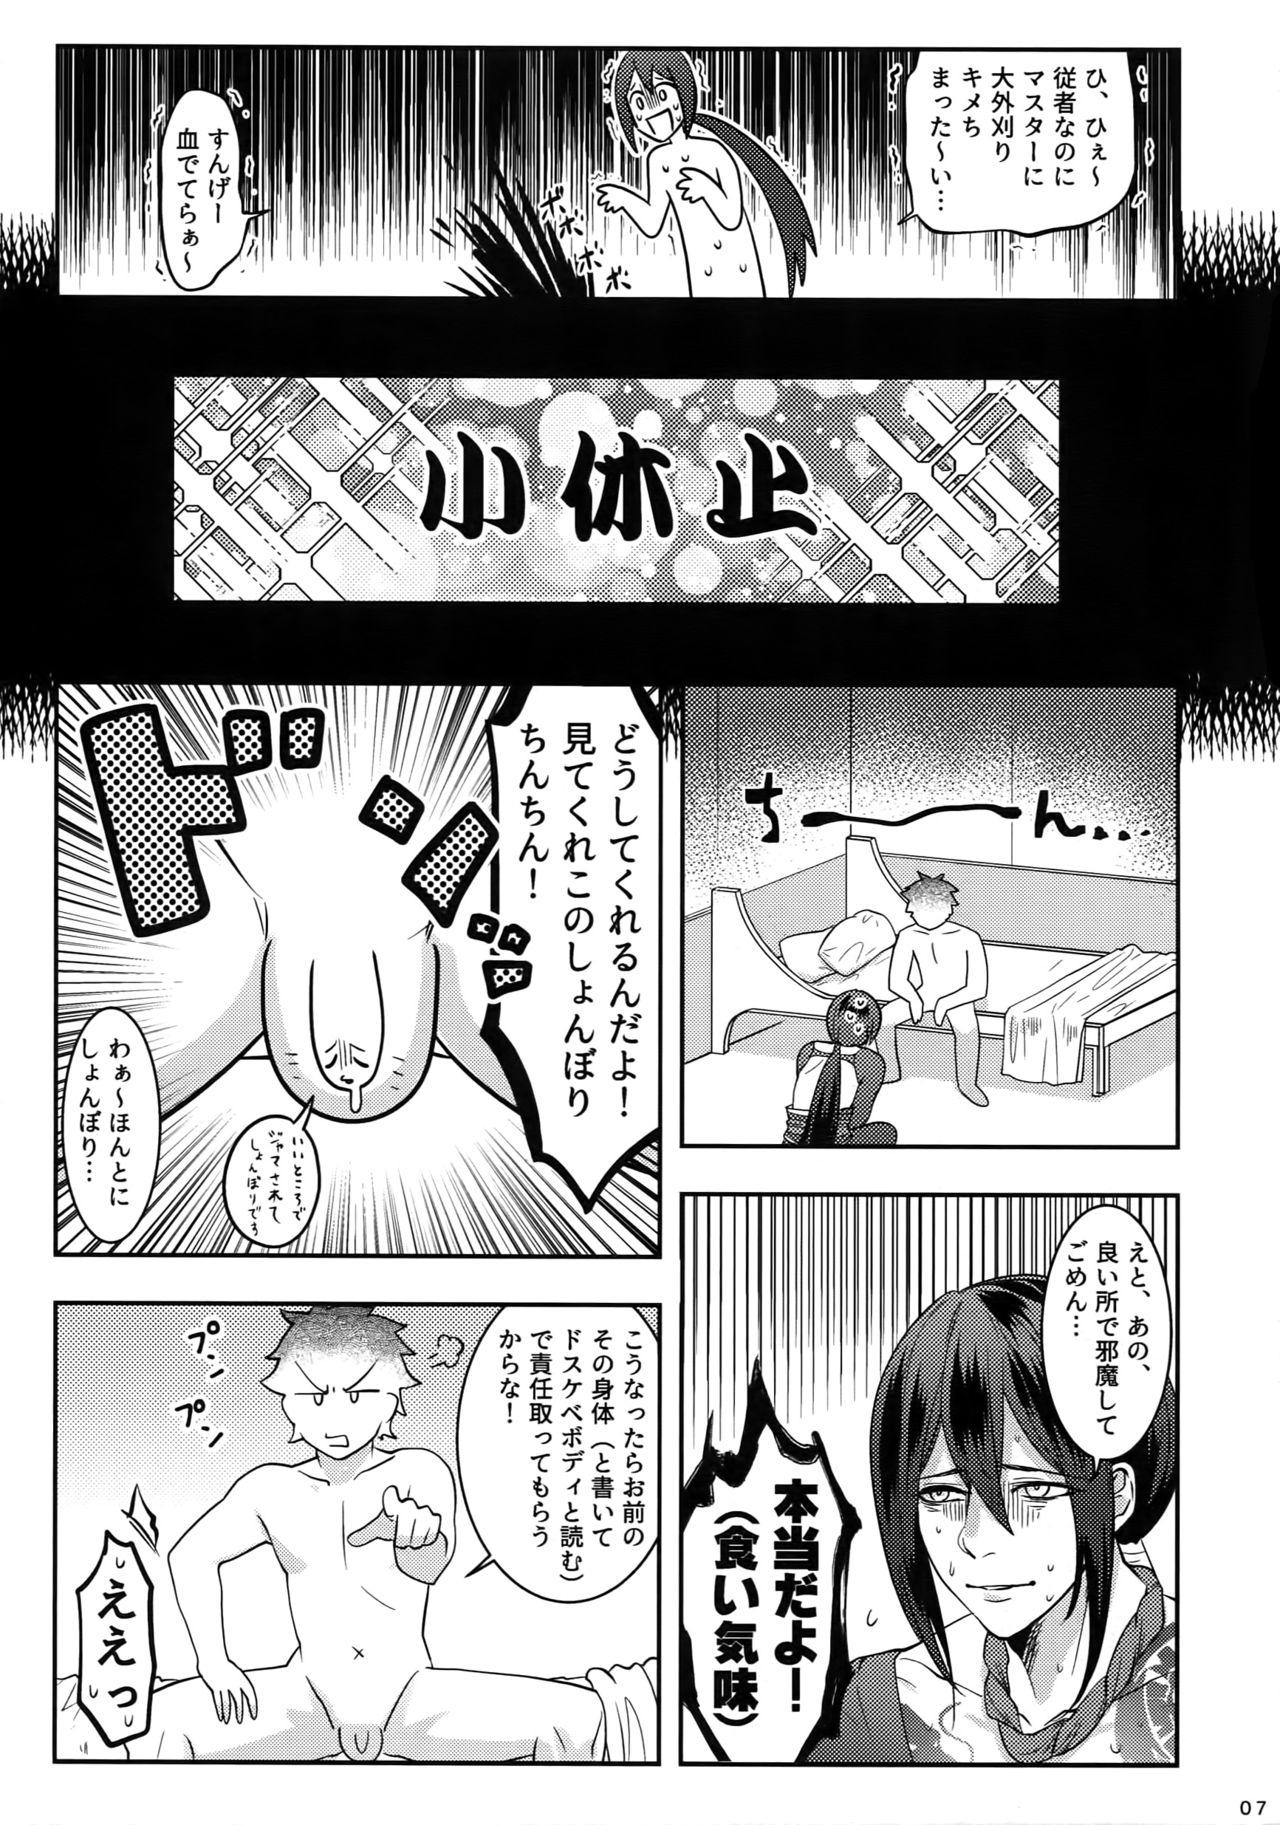 Step Dad Reiju no Mudazukai! Yarasete Kure Shinjuku no Assassin! - Fate grand order Hoe - Page 6